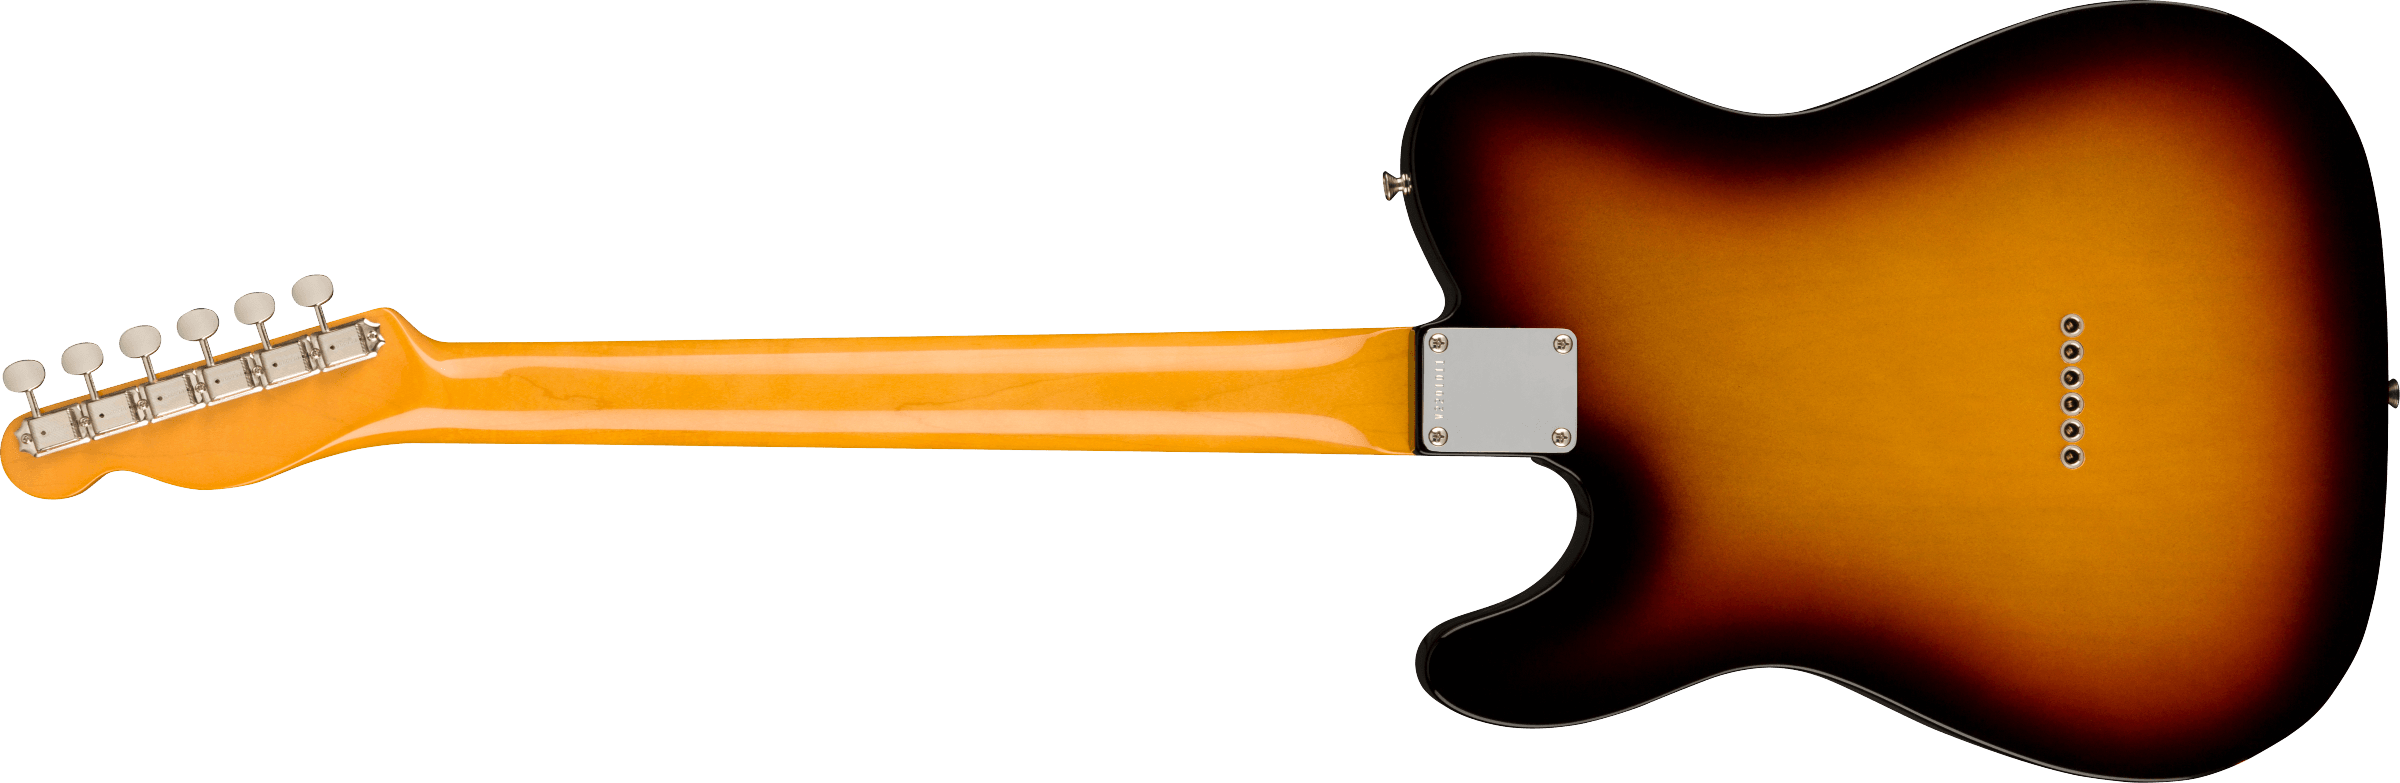 Fender American Vintage II 1963 Telecaster Rosewood Fingerboard, 3-Color Sunburst 0110380800